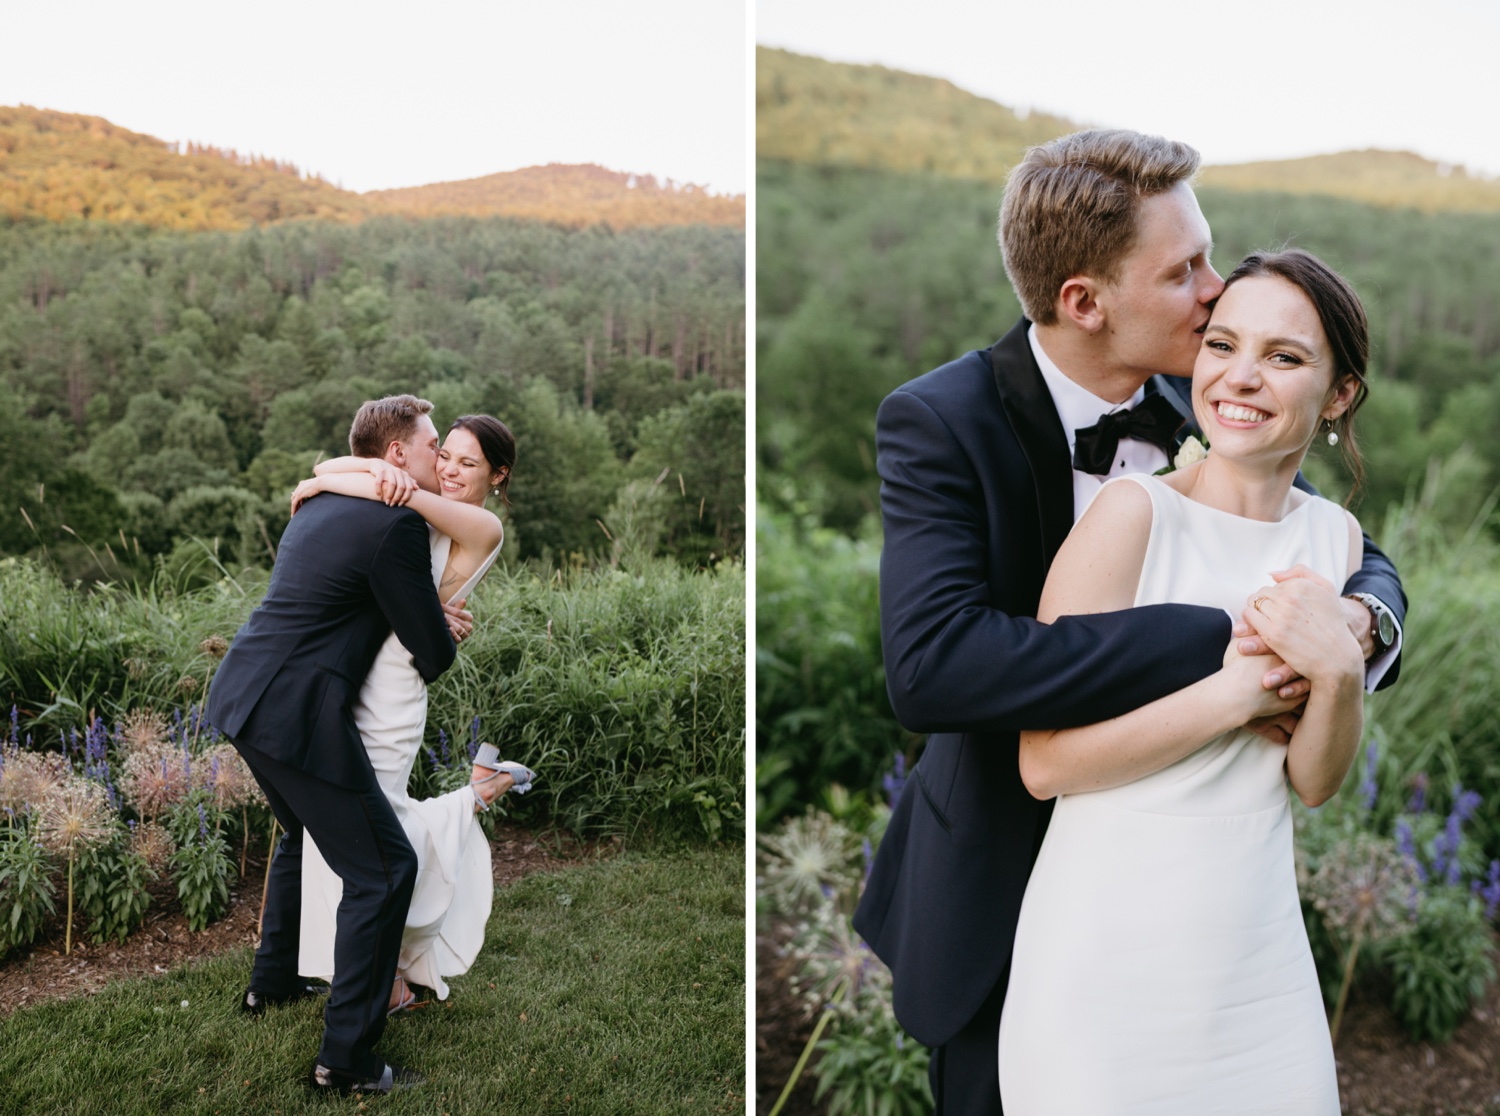 woodstock inn wedding bride and groom hugging smiling